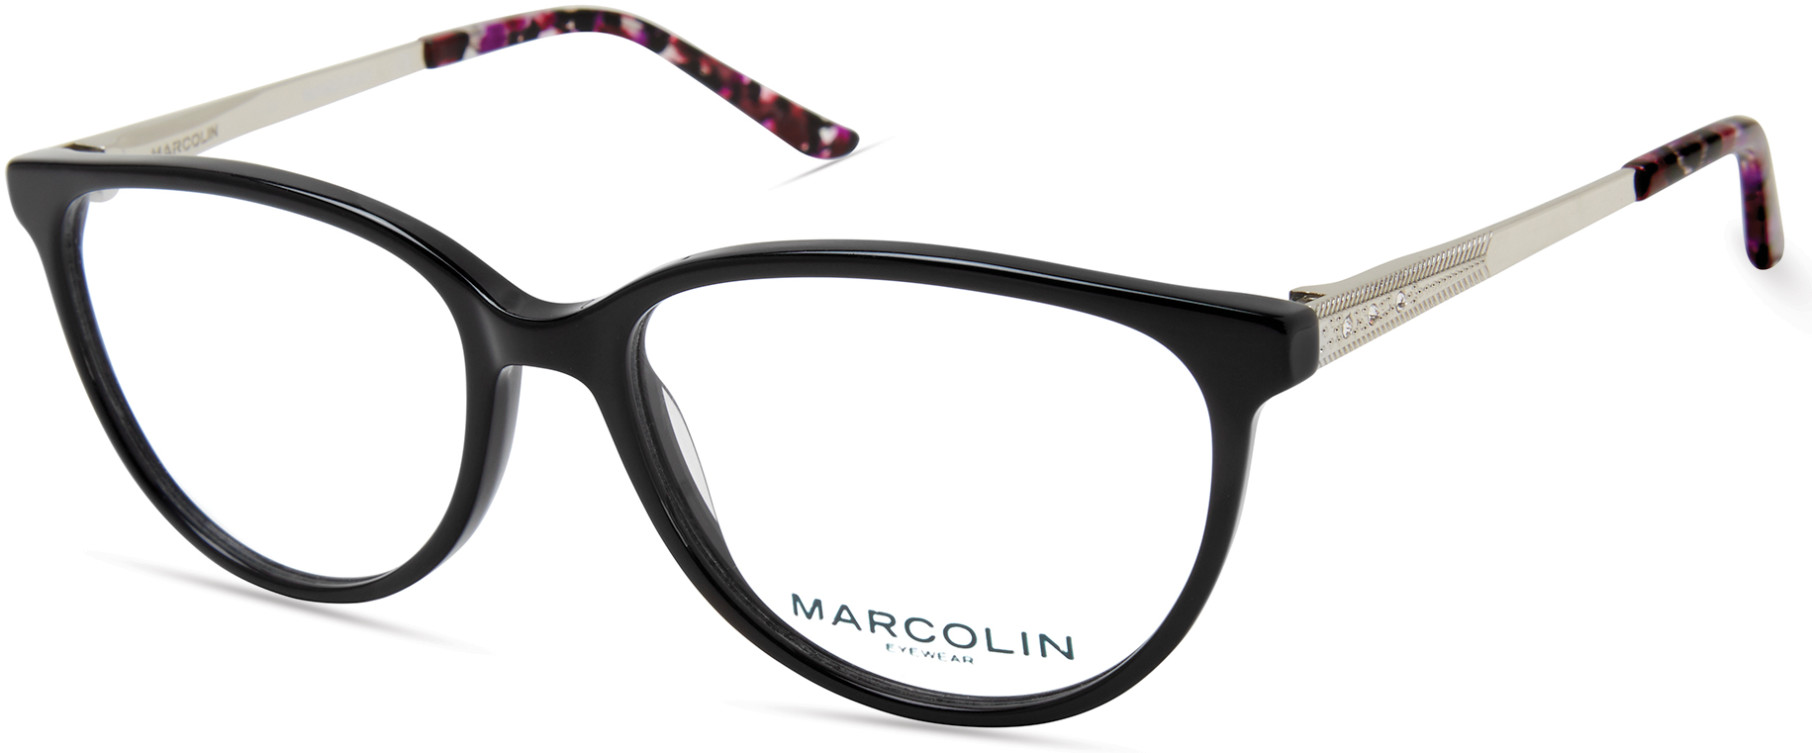 MARCOLIN 5019